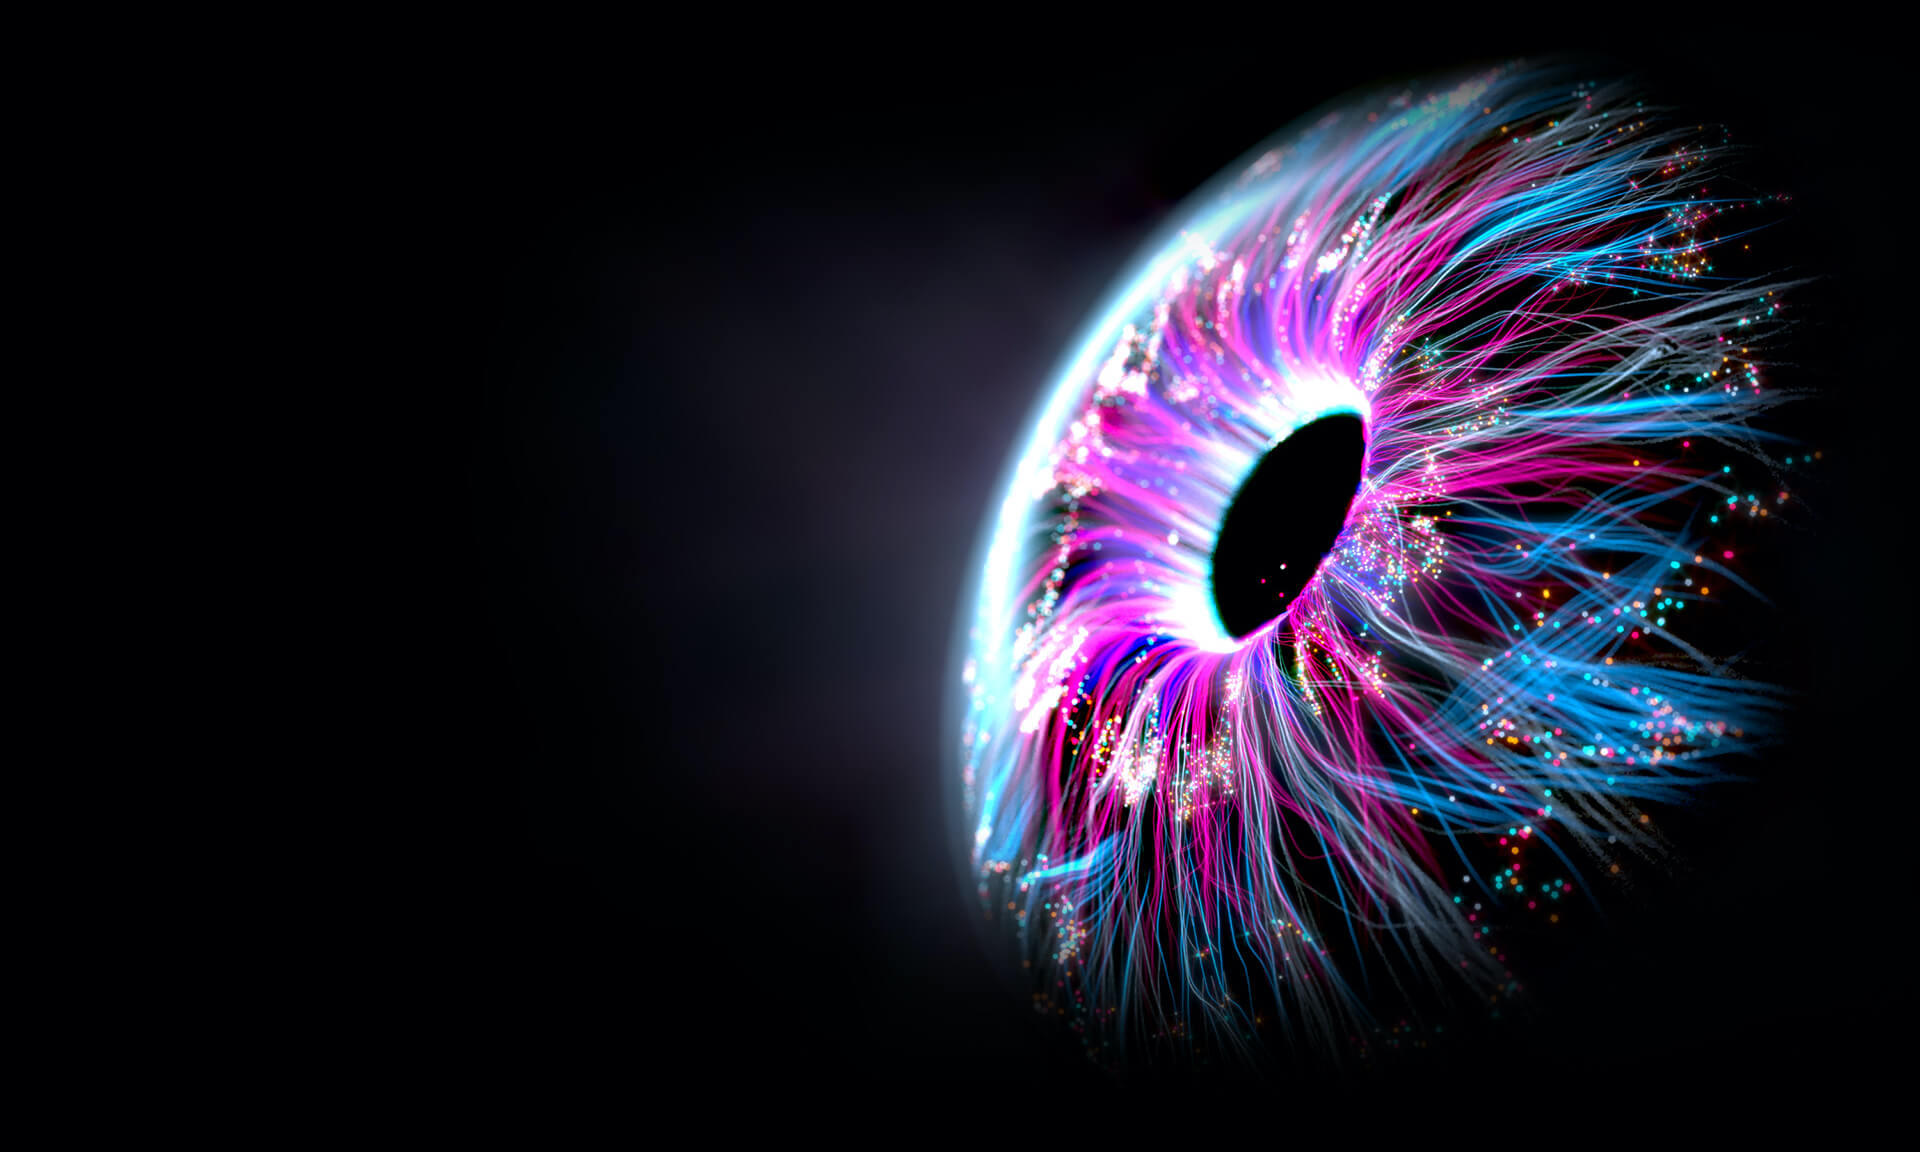 Nahaufnahme eines menschlichen Auges, aus dem blau- und lilafarbene Datenströme fließen